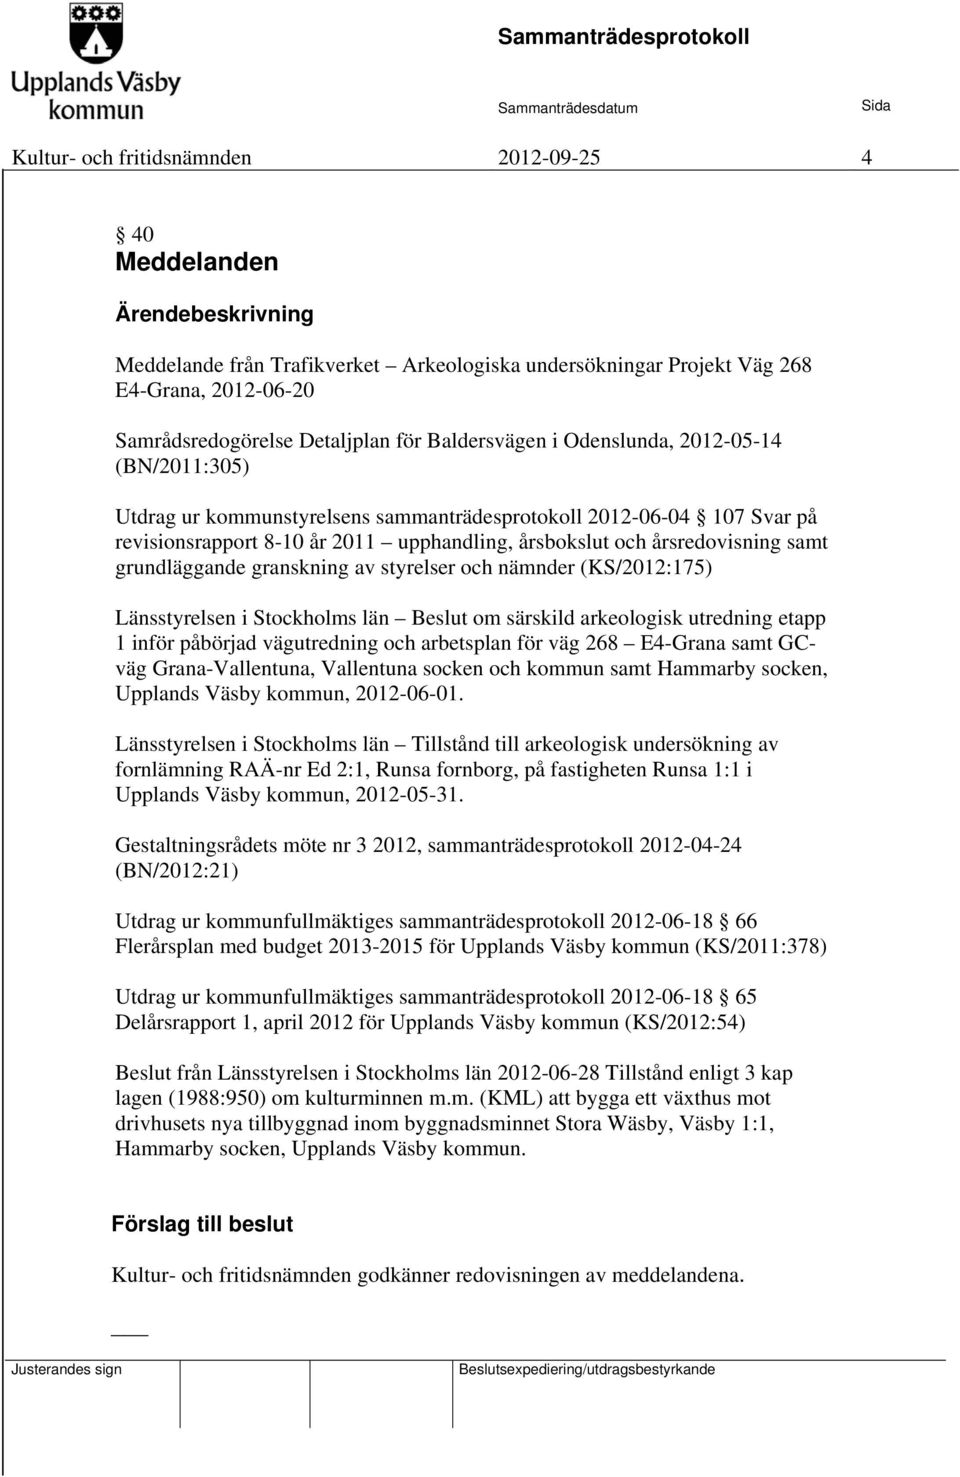 årsredovisning samt grundläggande granskning av styrelser och nämnder (KS/2012:175) Länsstyrelsen i Stockholms län Beslut om särskild arkeologisk utredning etapp 1 inför påbörjad vägutredning och